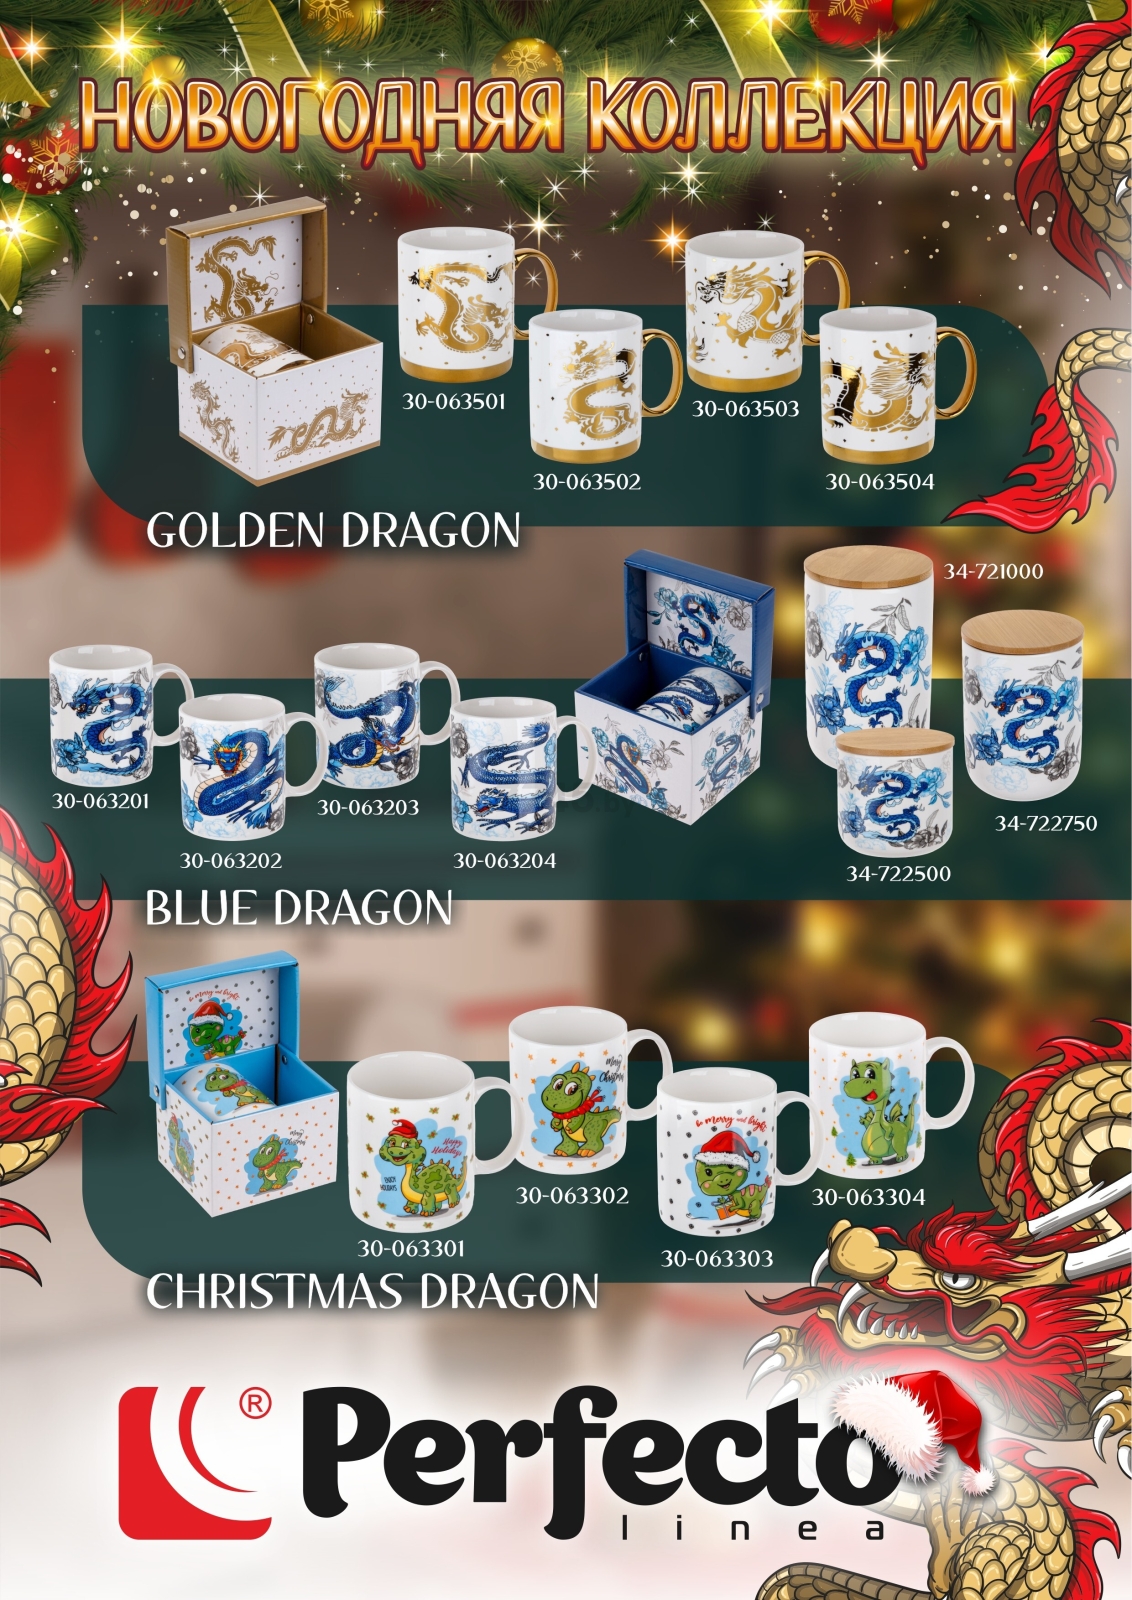 Кружка керамическая PERFECTO LINEA Golden Dragon-3 360 мл (30-063503) - Фото 4